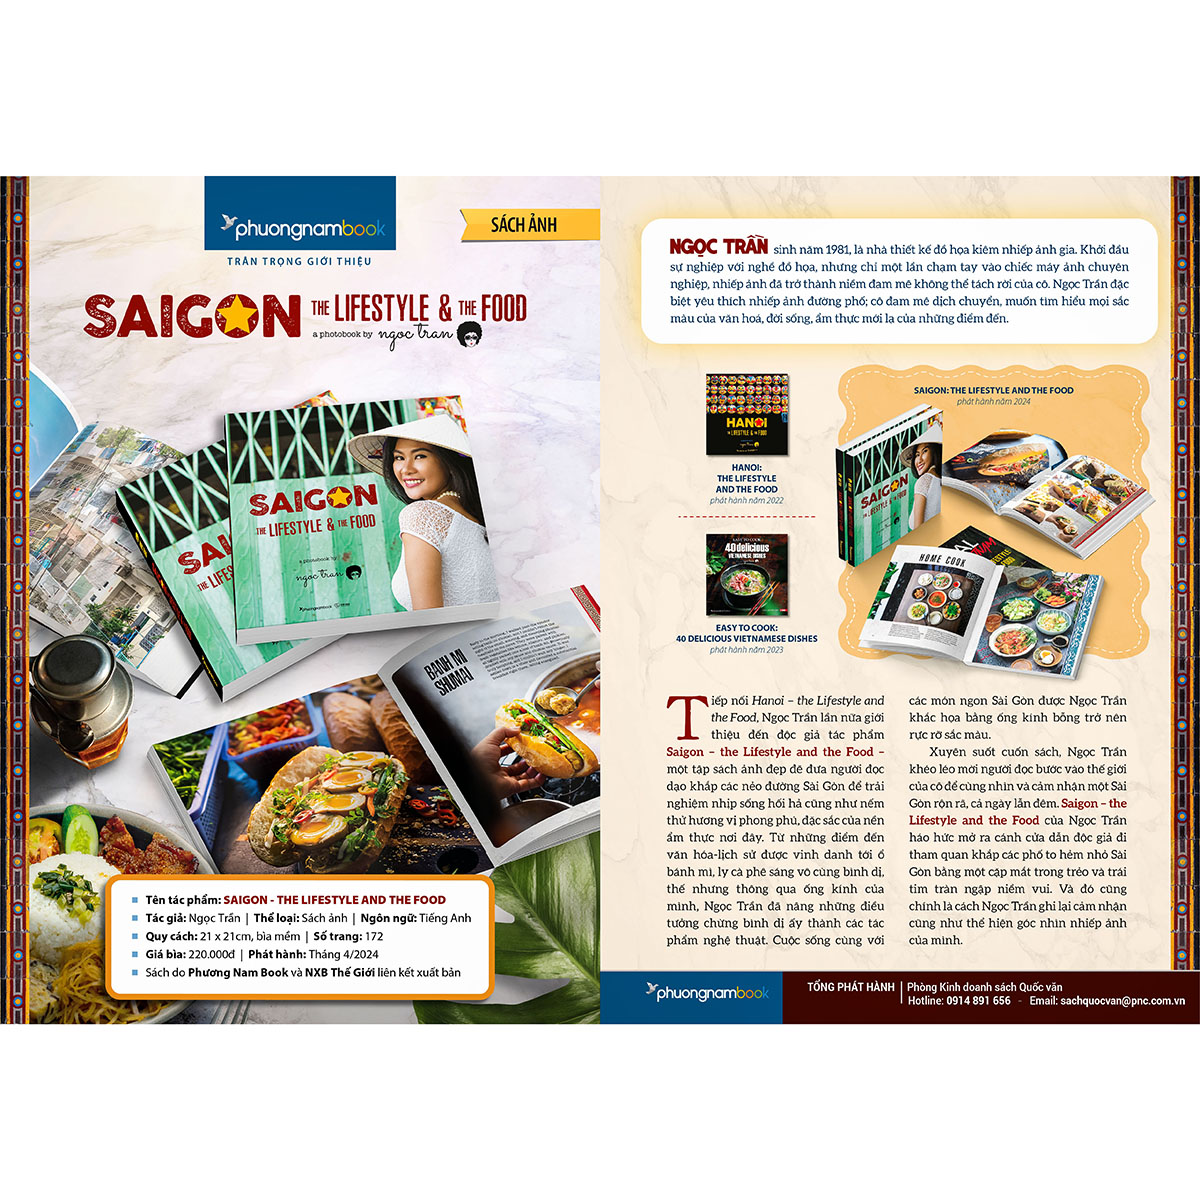 SAIGON - THE LIFESTYLE and THE FOOD